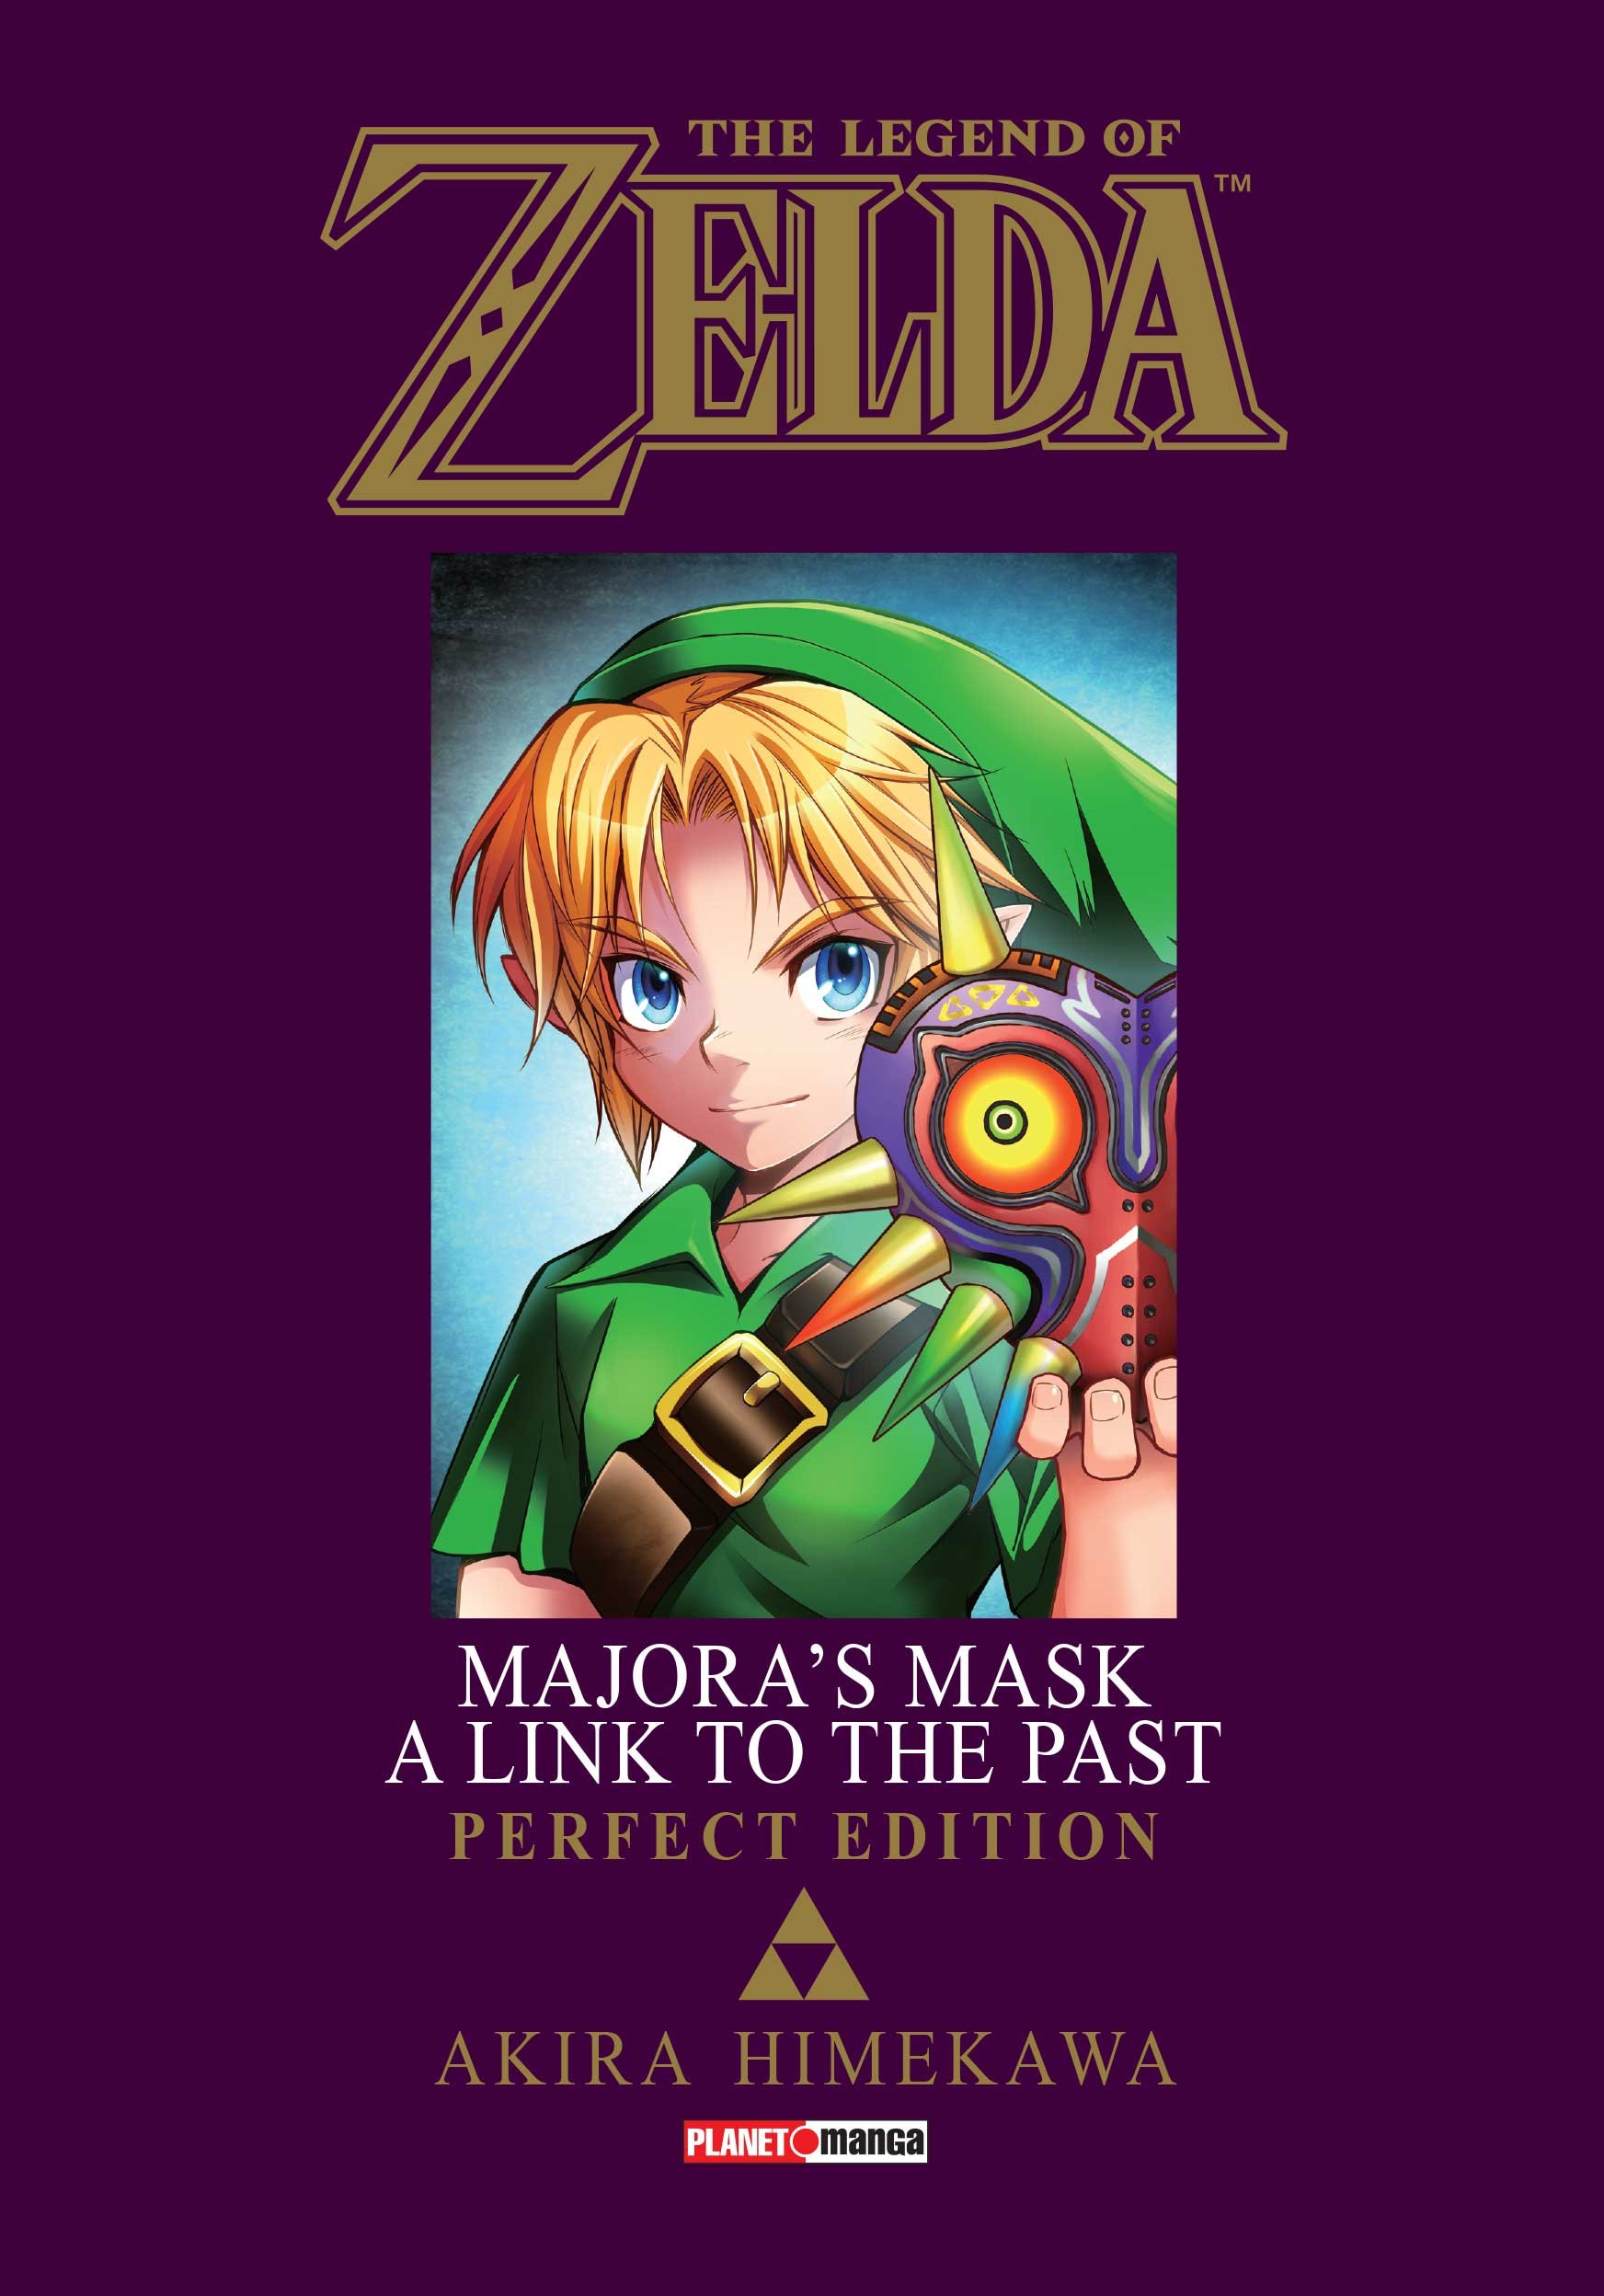 Mangás da série Zelda em português para vocês - Palitos Nerds